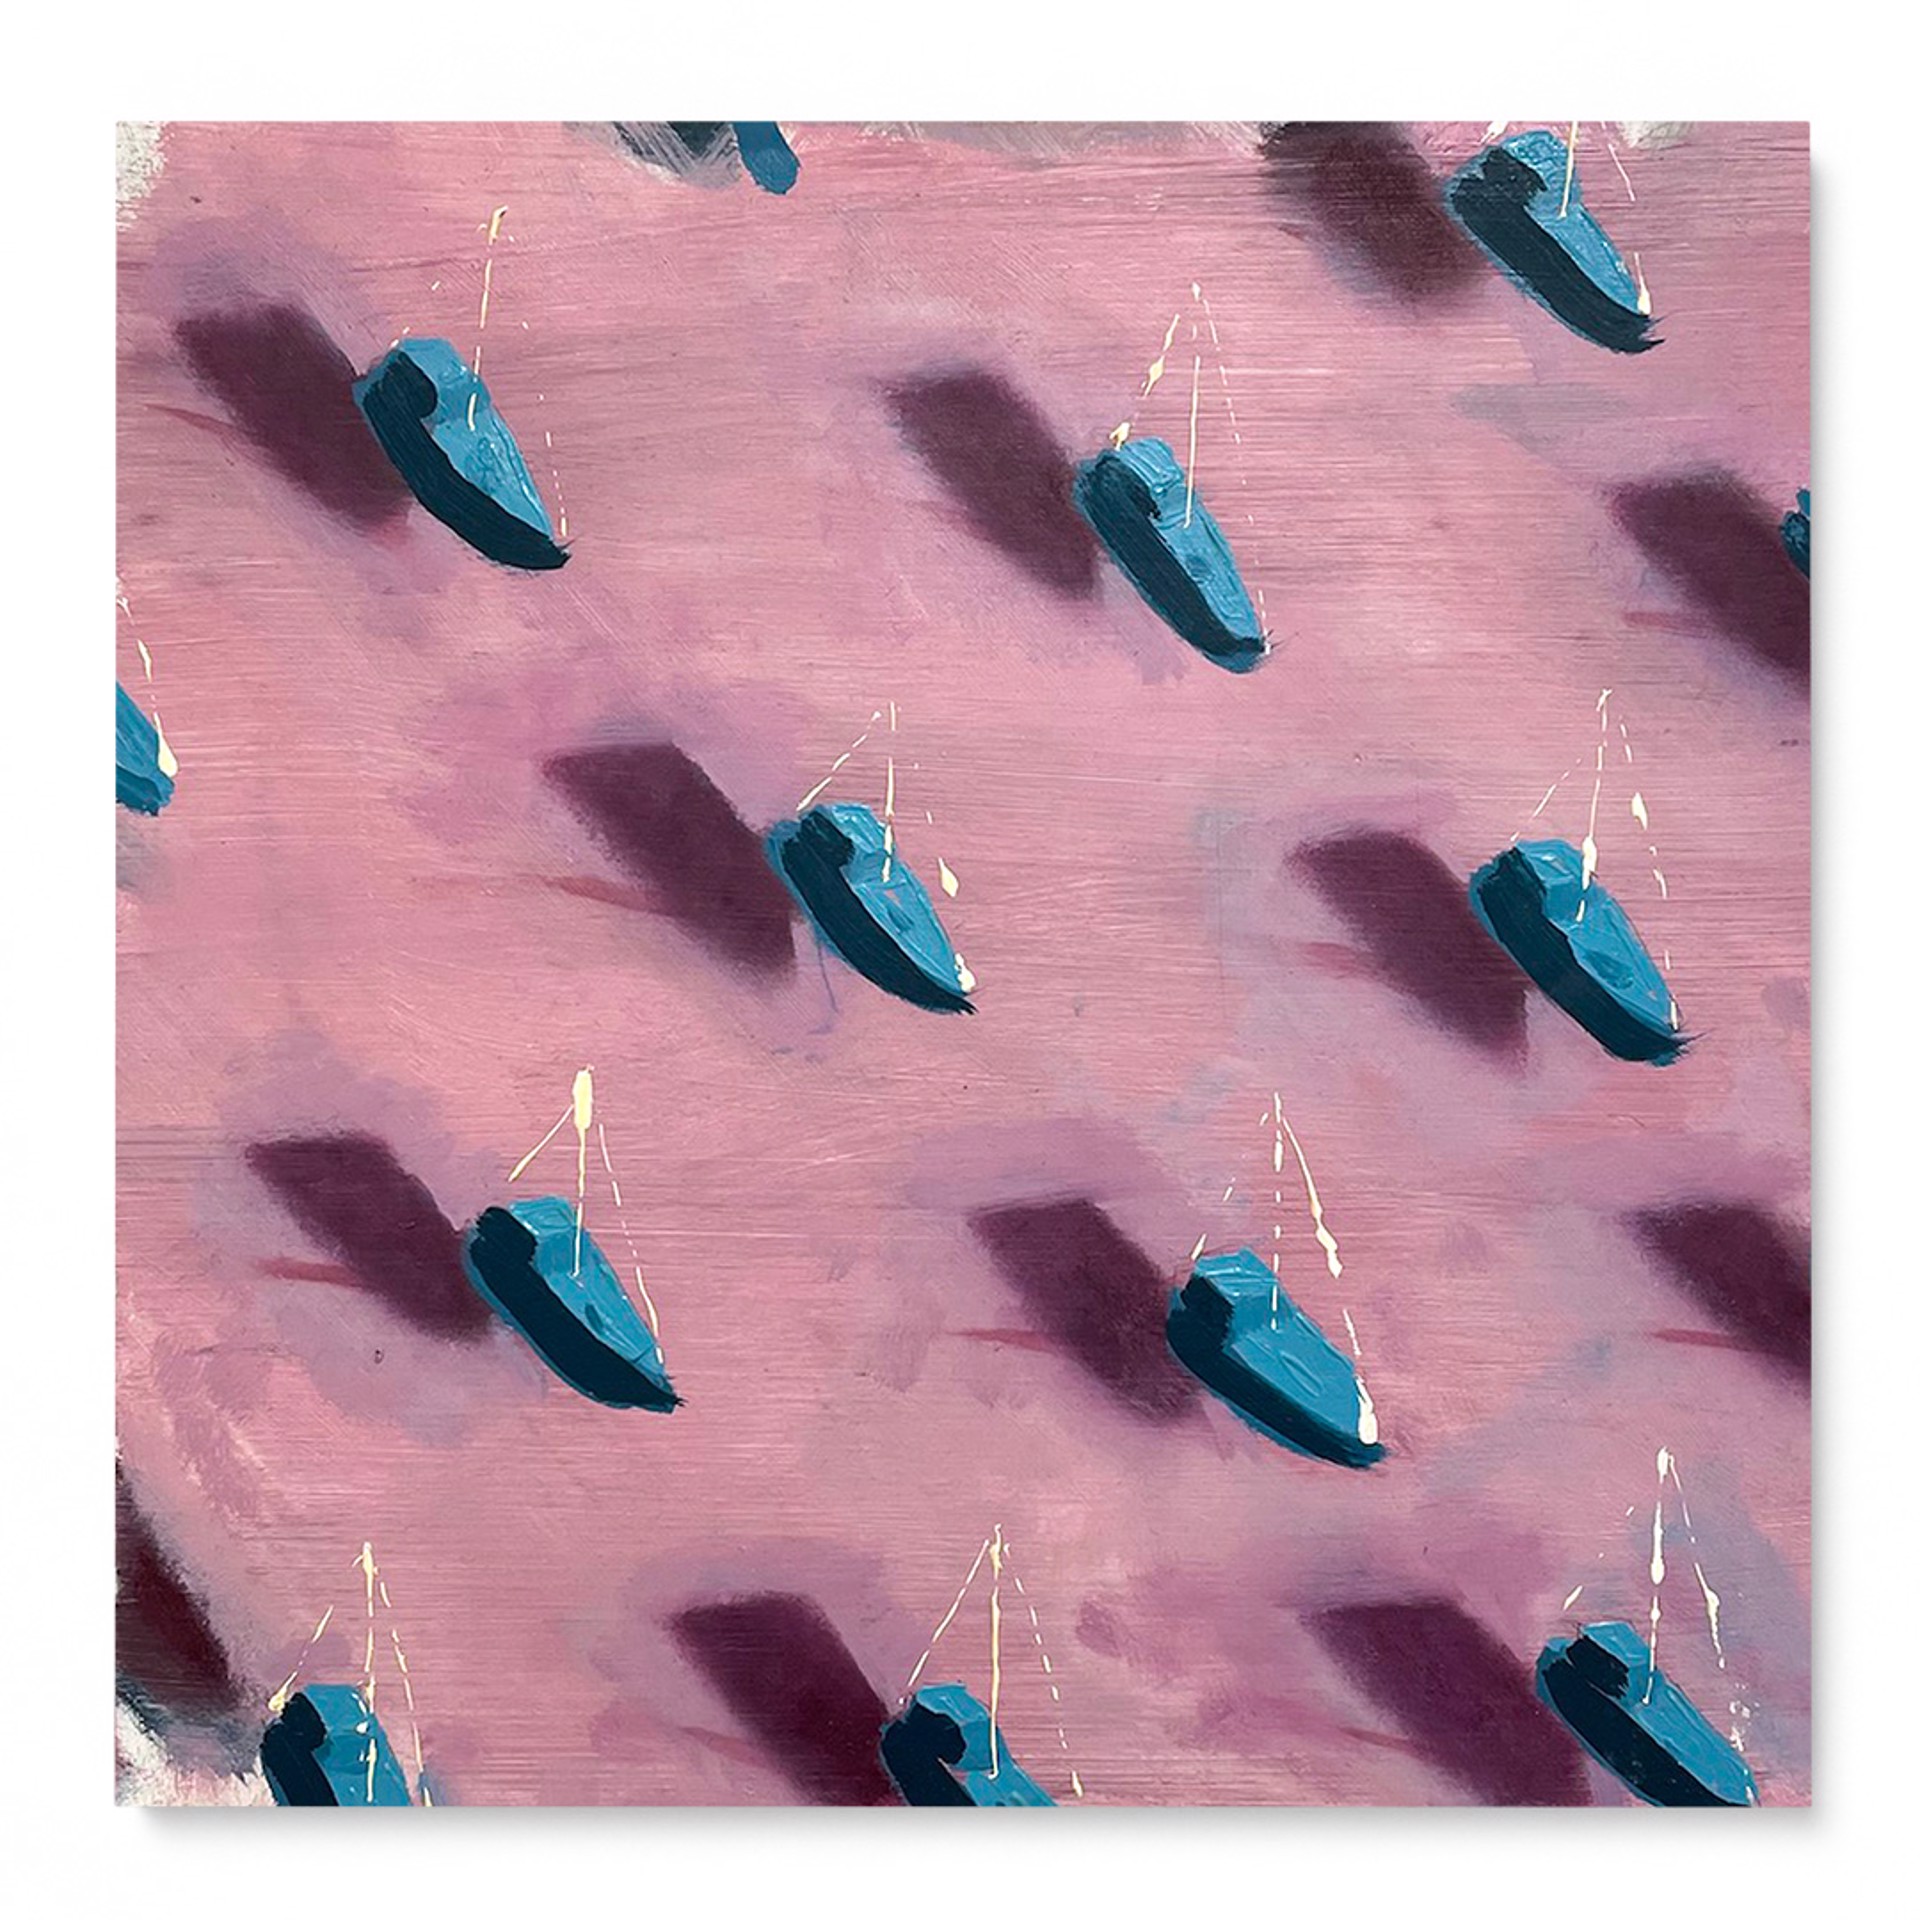 Blue boats on pink by Dan Pelonis